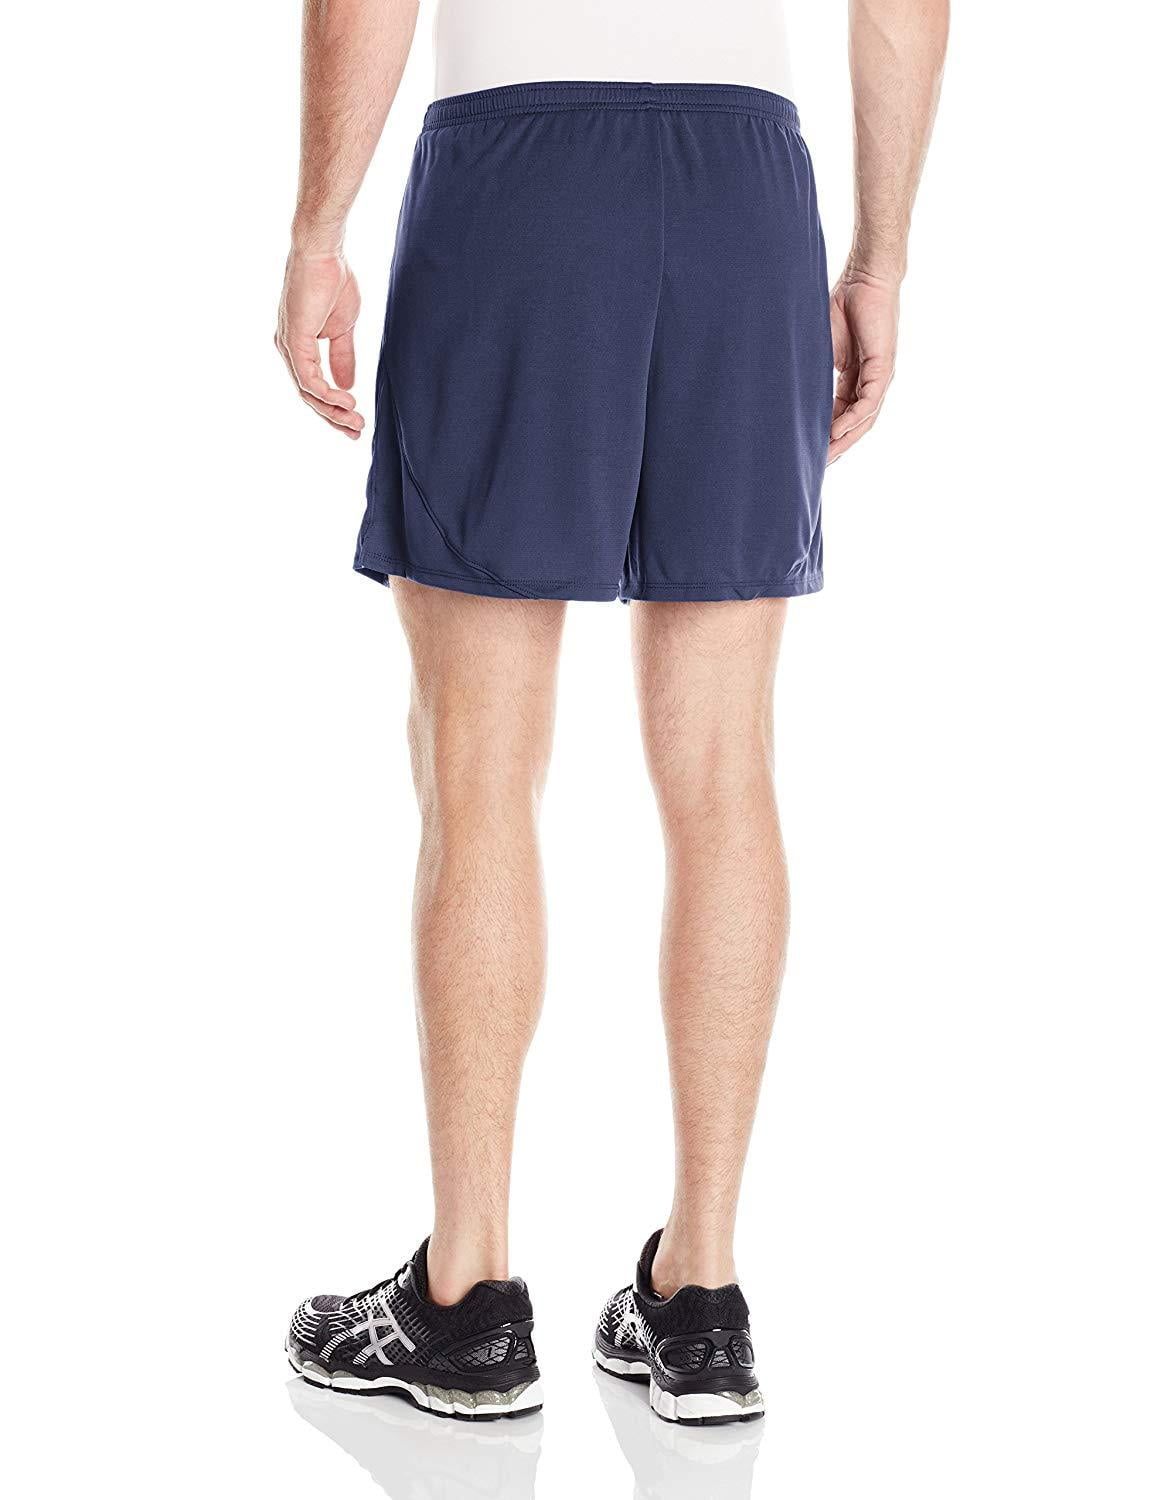 ASICS Men's Rival II Shorts, Color Options - Walmart.com